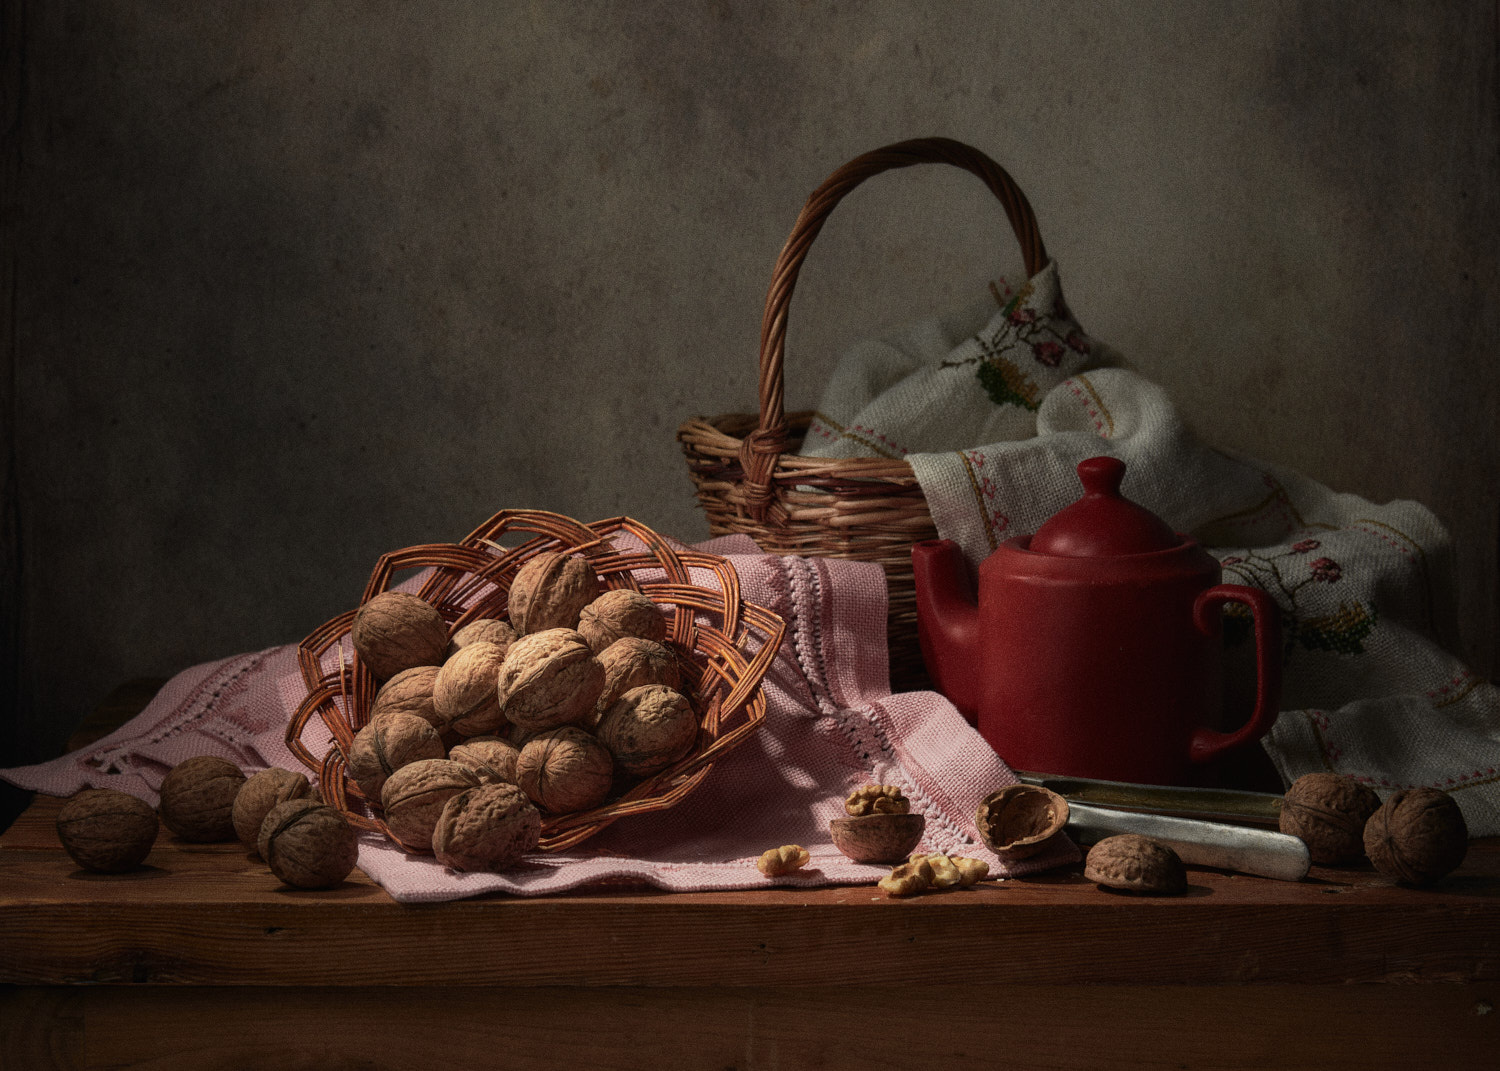 Грецкие орехи натюрморт композиция постановка сцена плоды еда орехи посуда